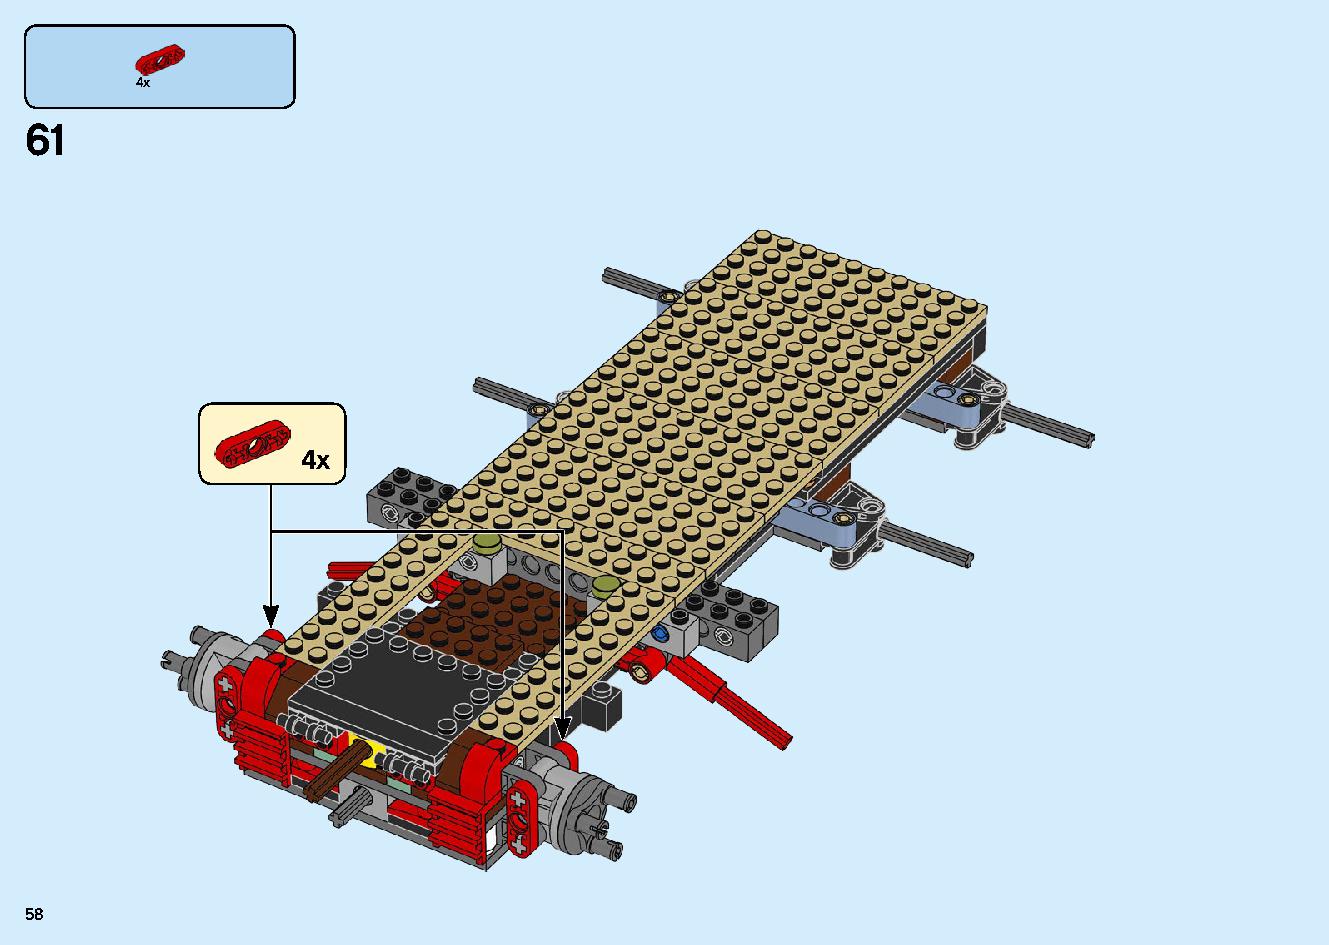 陸上戦艦バウンティ号 70677 レゴの商品情報 レゴの説明書・組立方法 58 page